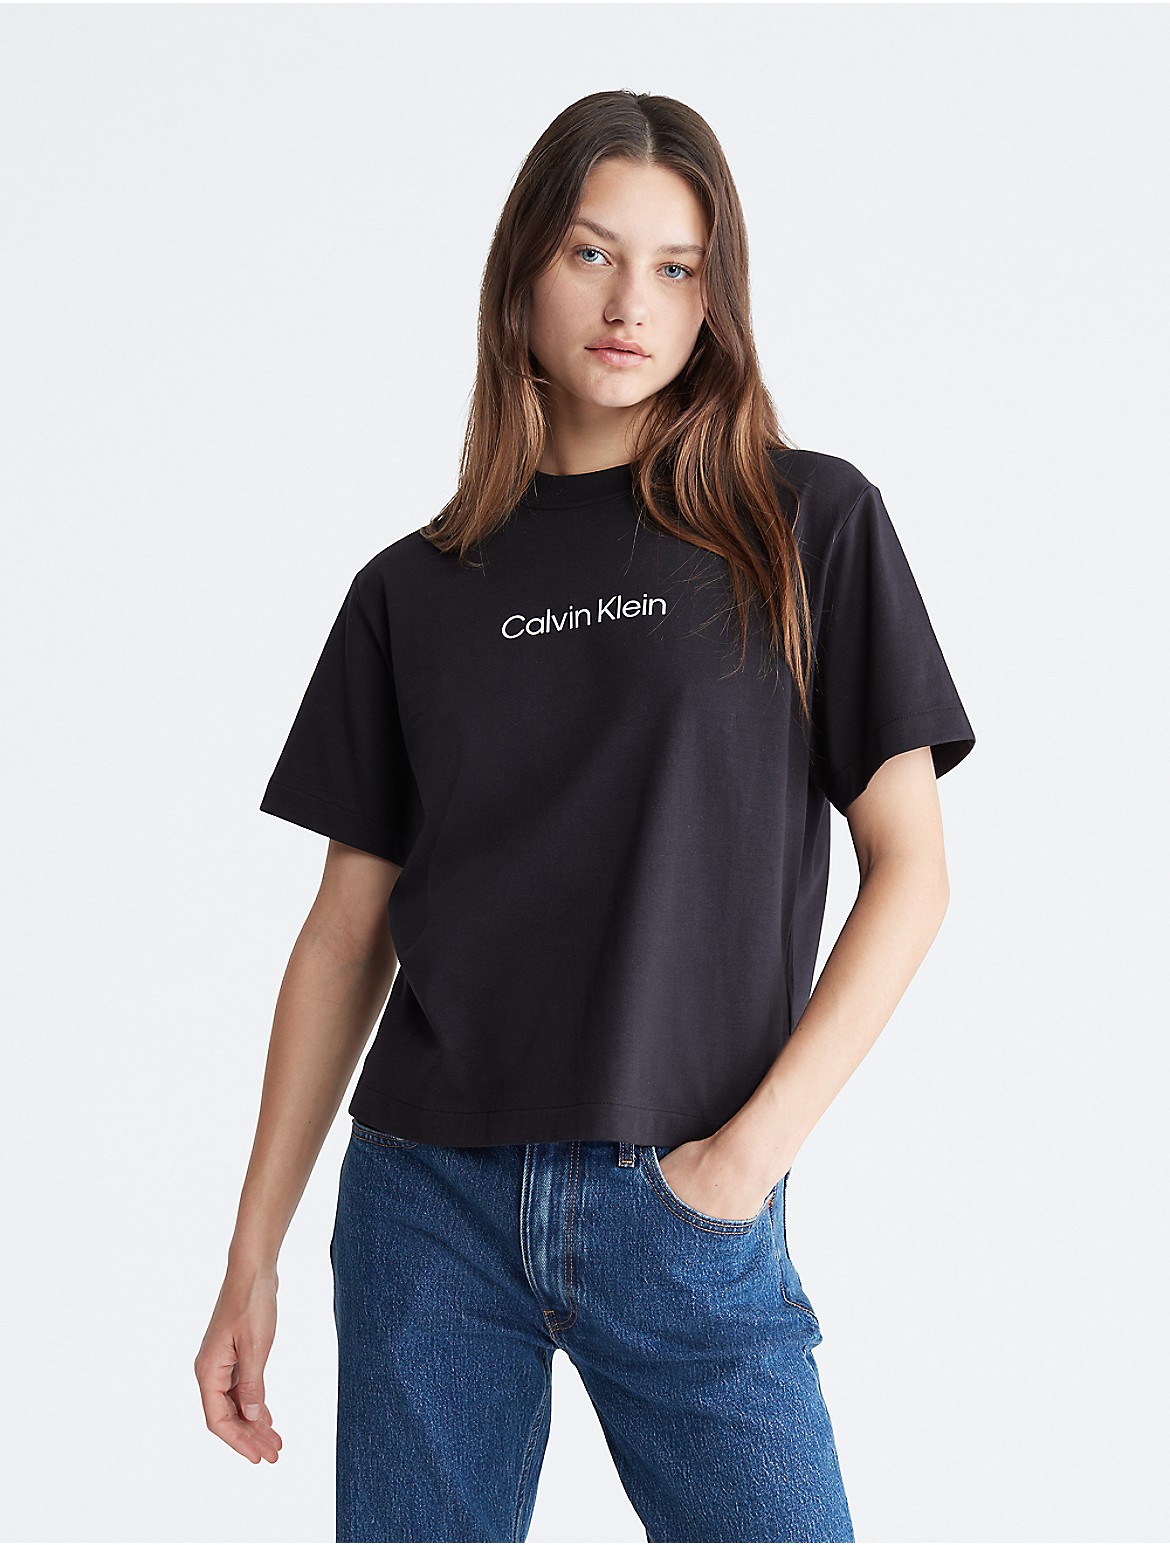 Calvin Klein Women's Relaxed Fit Standard Logo Crewneck T-Shirt - Black - XS